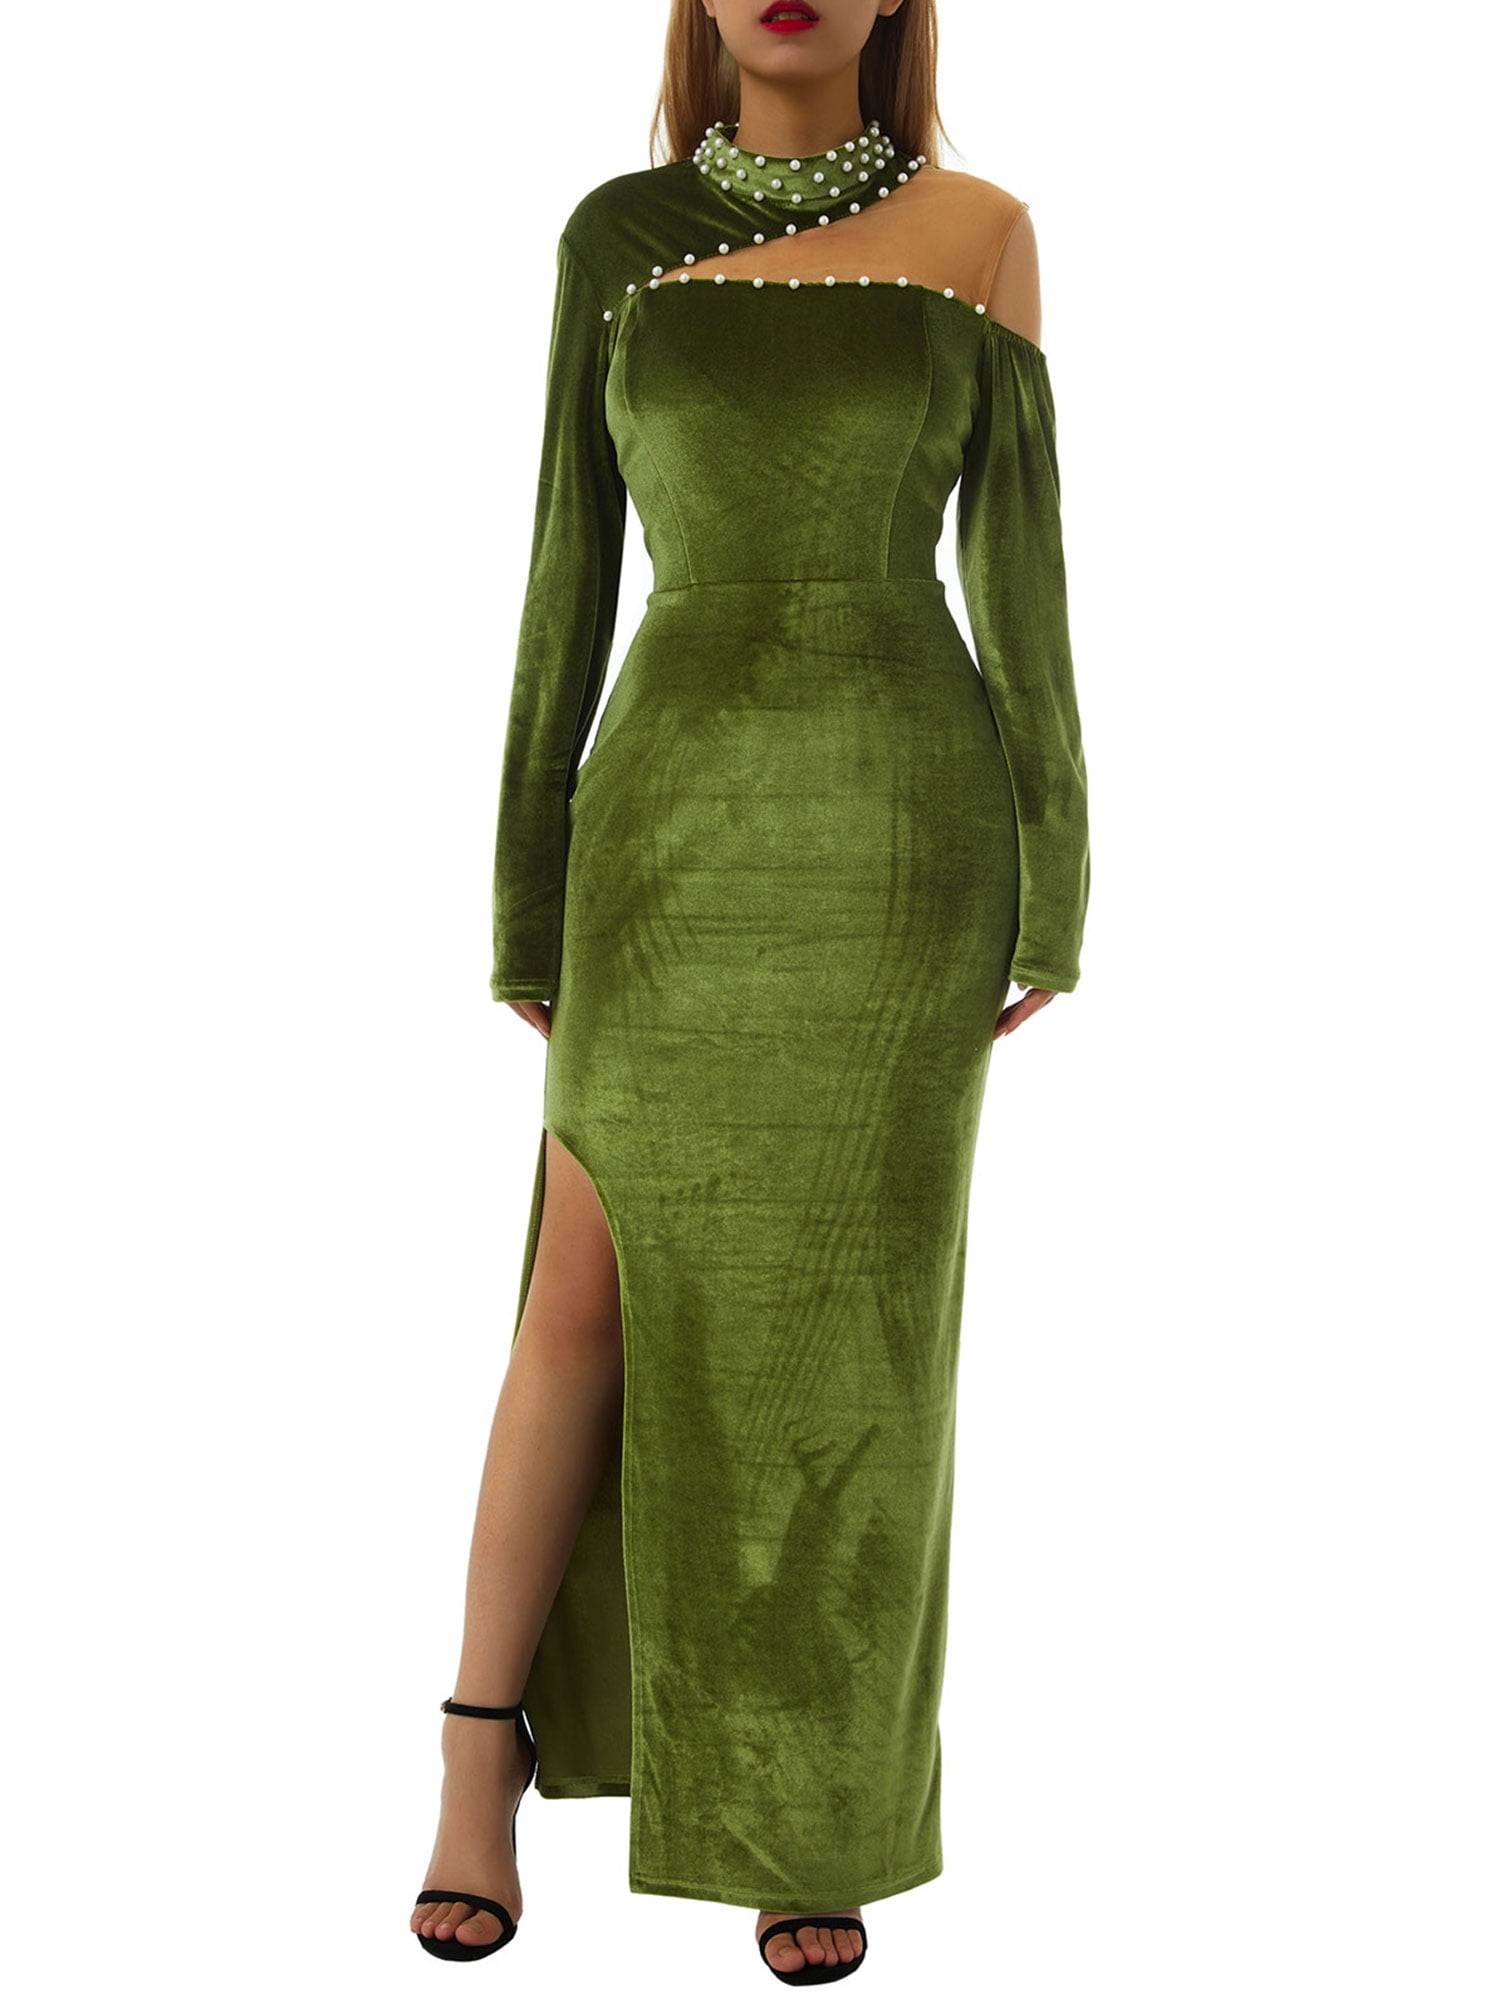 LSFYSZD Women Sexy High Slit Dress, Green High Neck Oblique